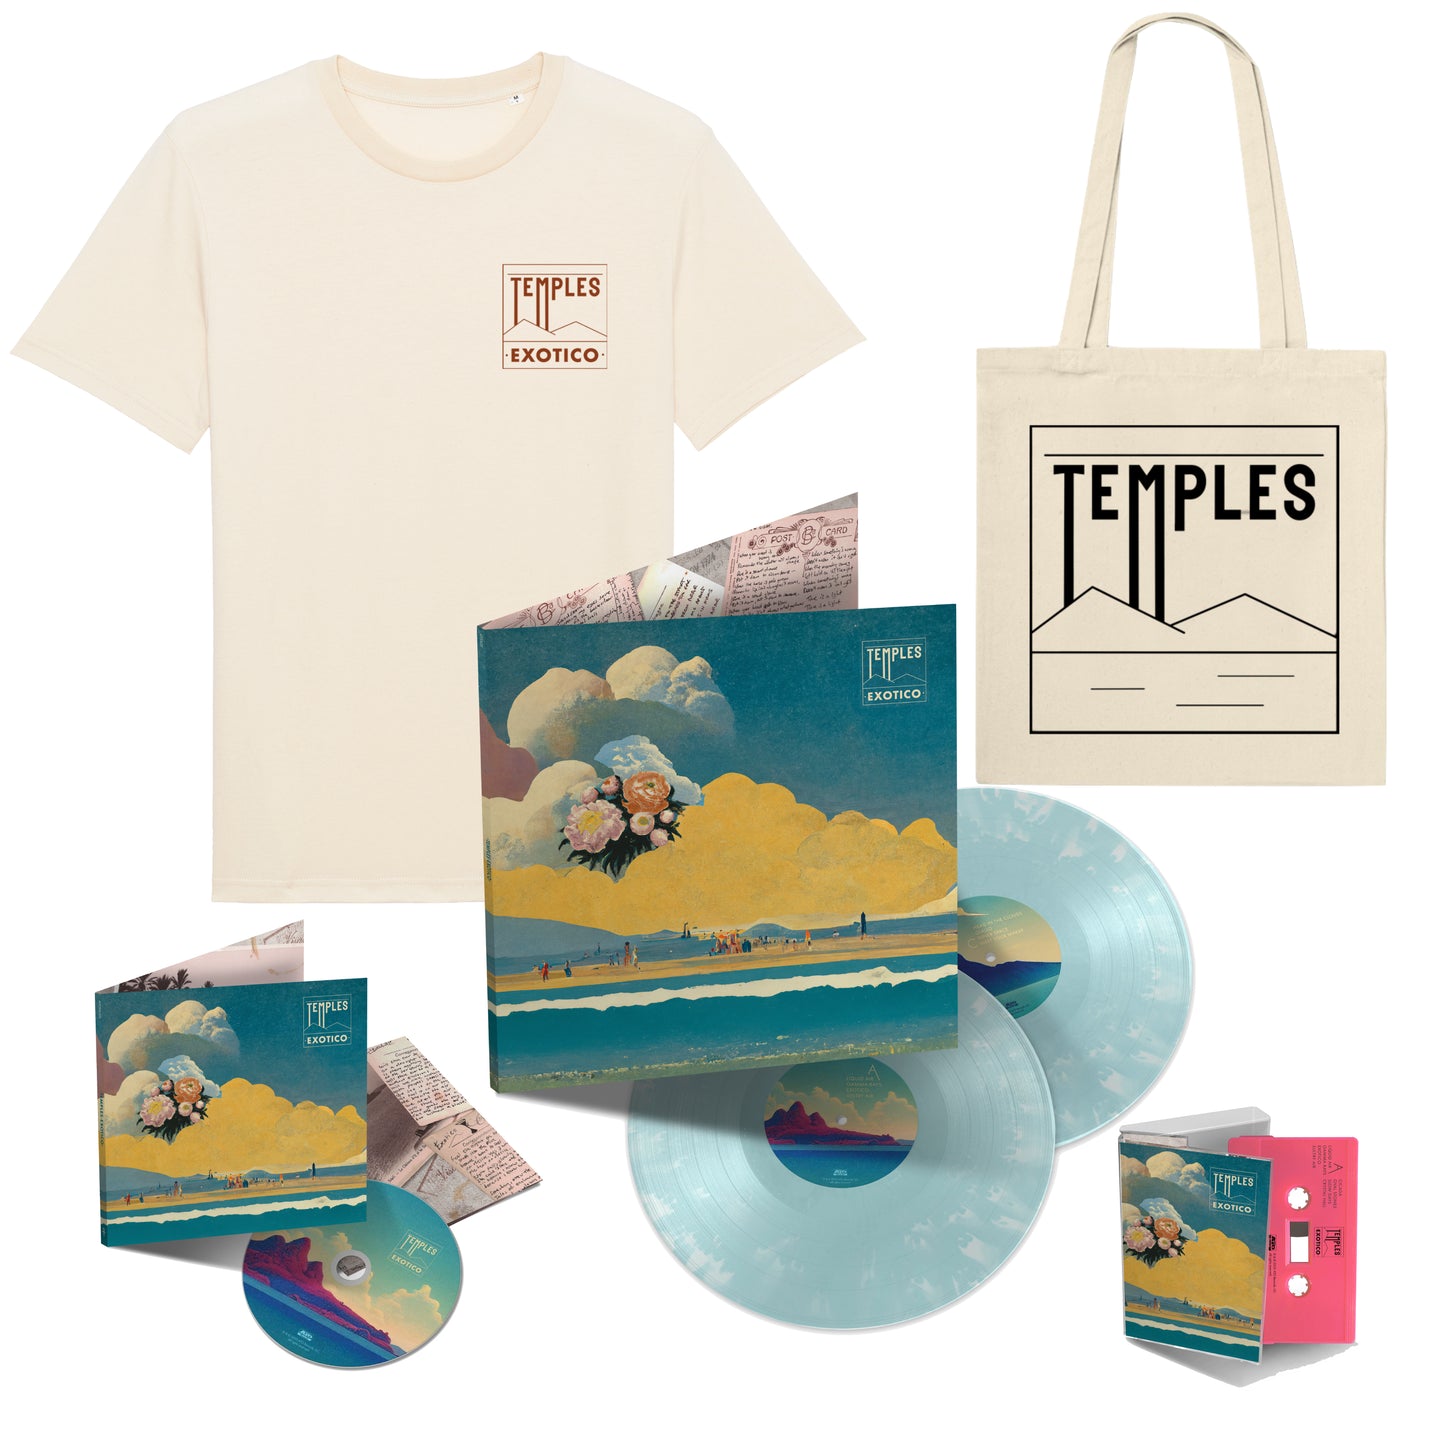 Deluxe Vinyl, CD, Cassette, T-Shirt, & Tote Bag Bundle